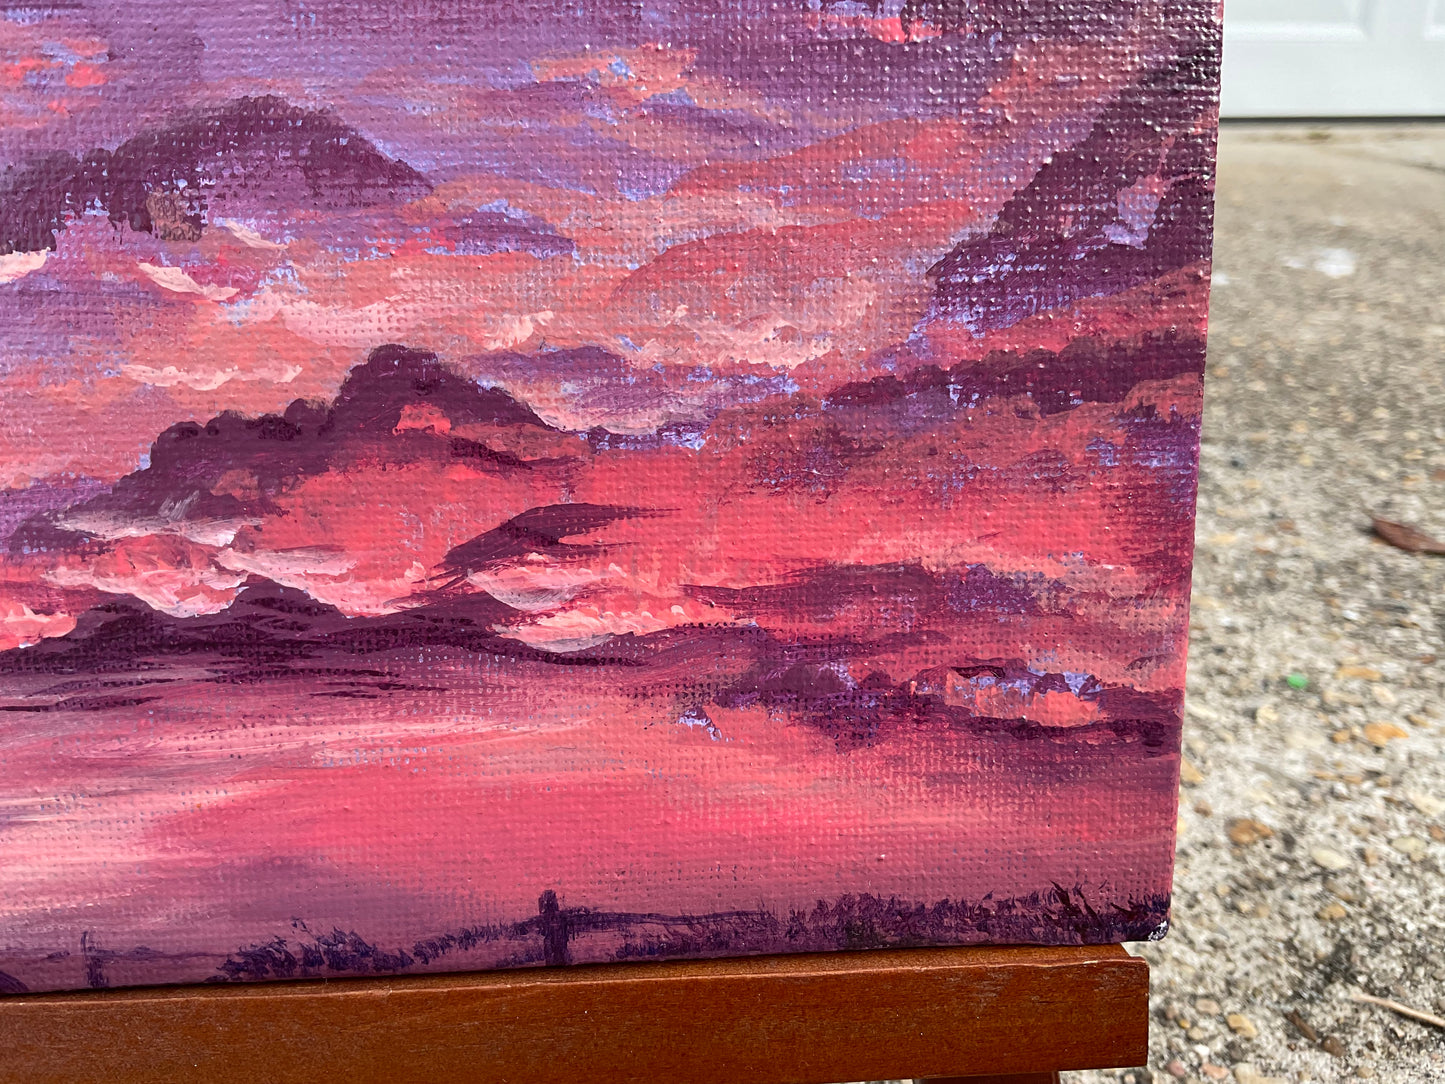 Sunrise - Original Painting (8x6in)